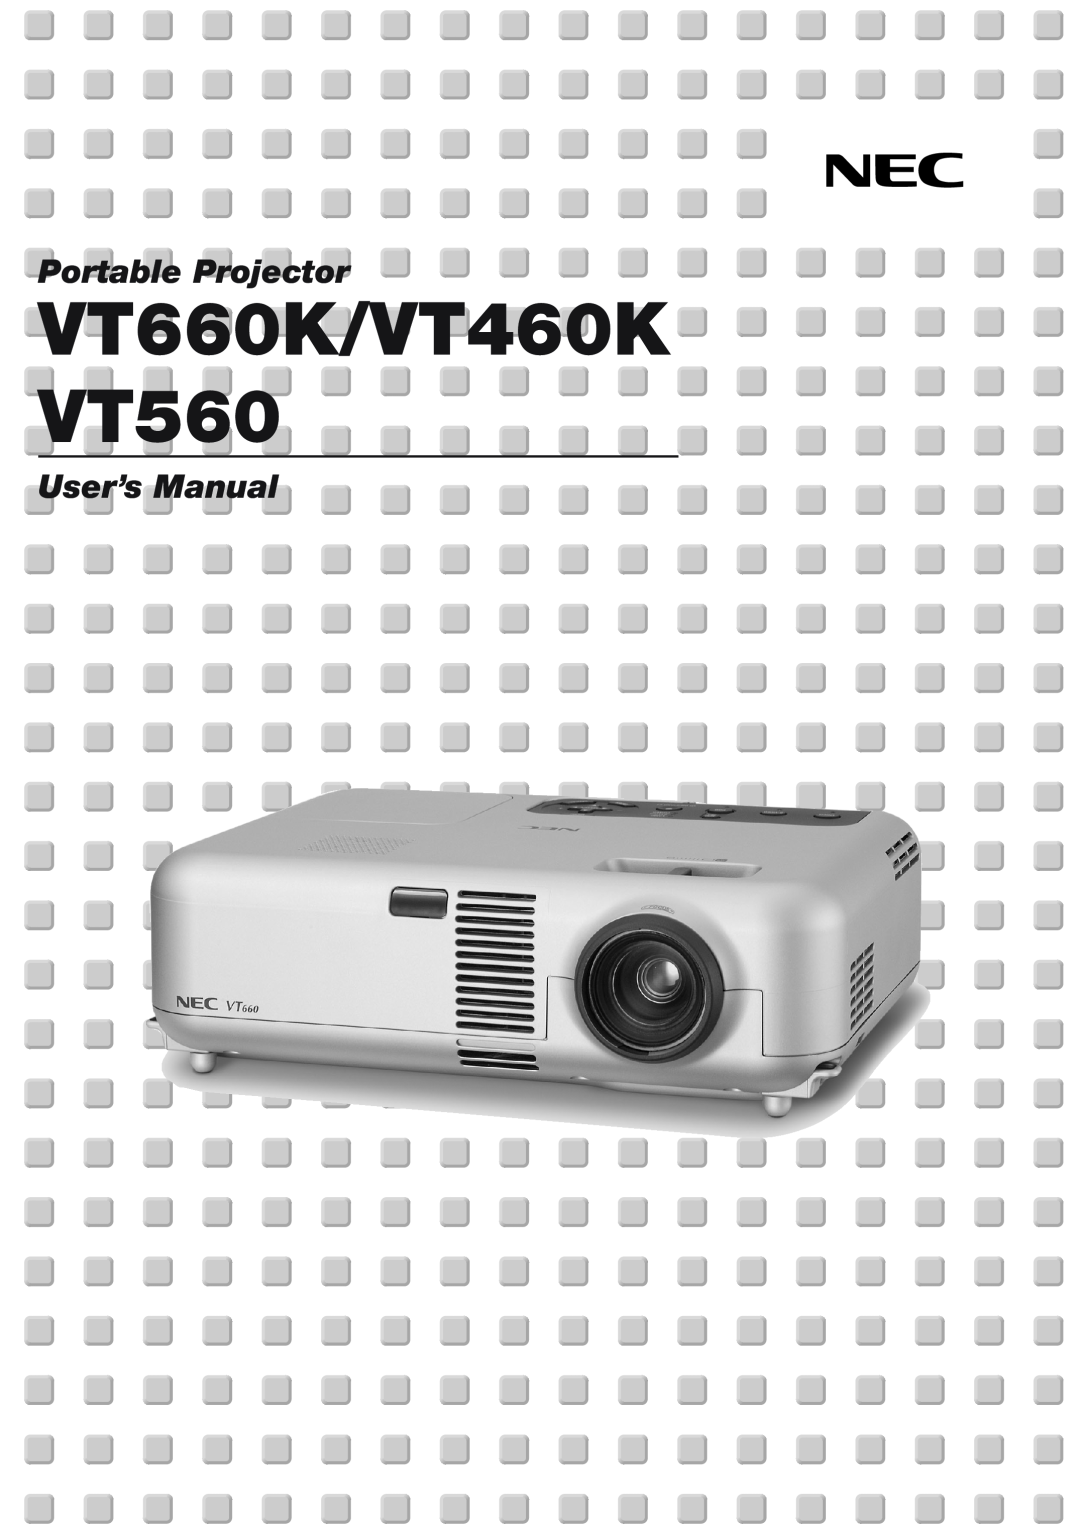 NEC manual VT660K/VT460KVT560, Portable Projector, User’s Manual 